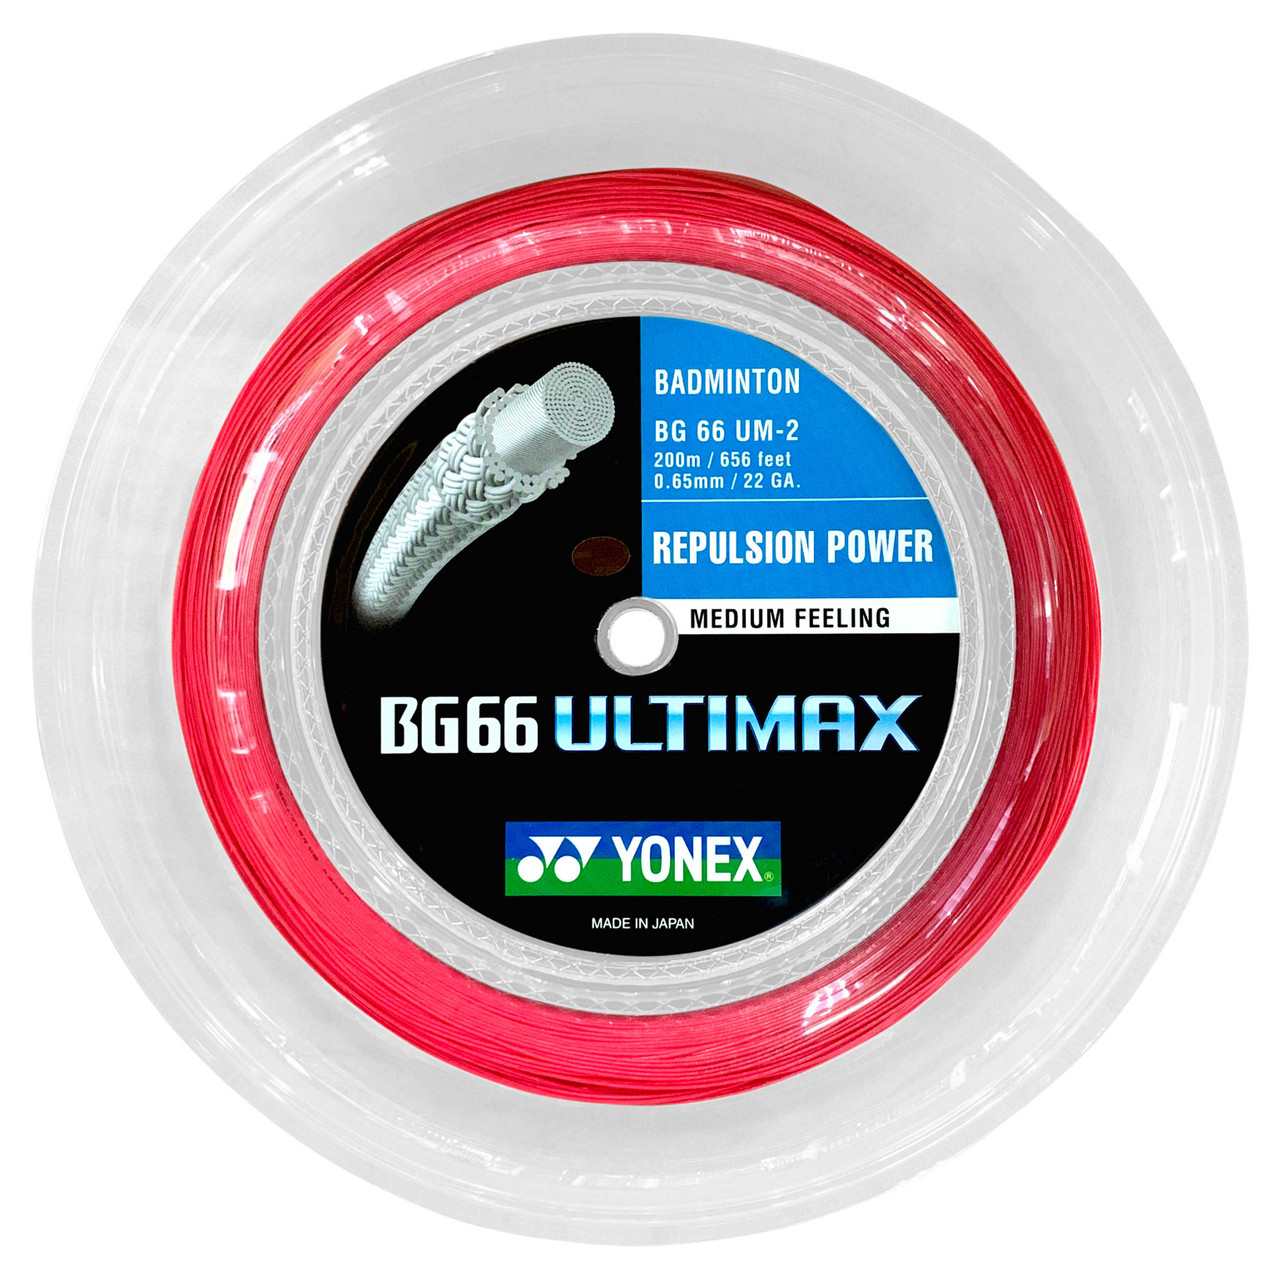 Yonex BG66 Ultimax 0.65mm Badminton Strings 200M Reel 